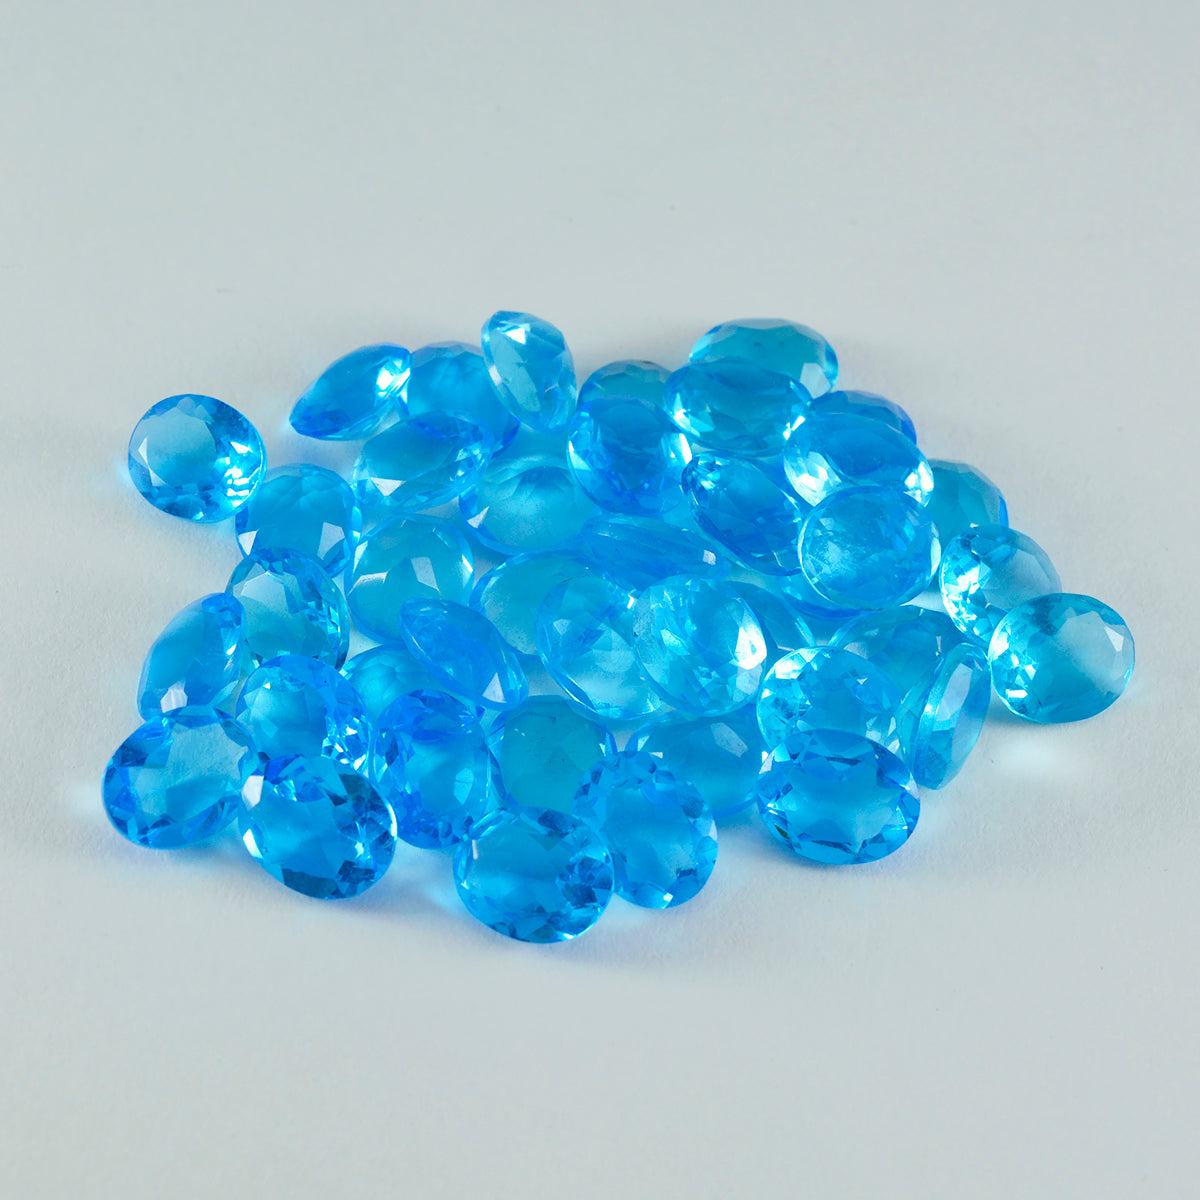 Riyogems 1 pieza de topacio azul CZ facetado 7x9 mm forma ovalada hermosa piedra preciosa de calidad